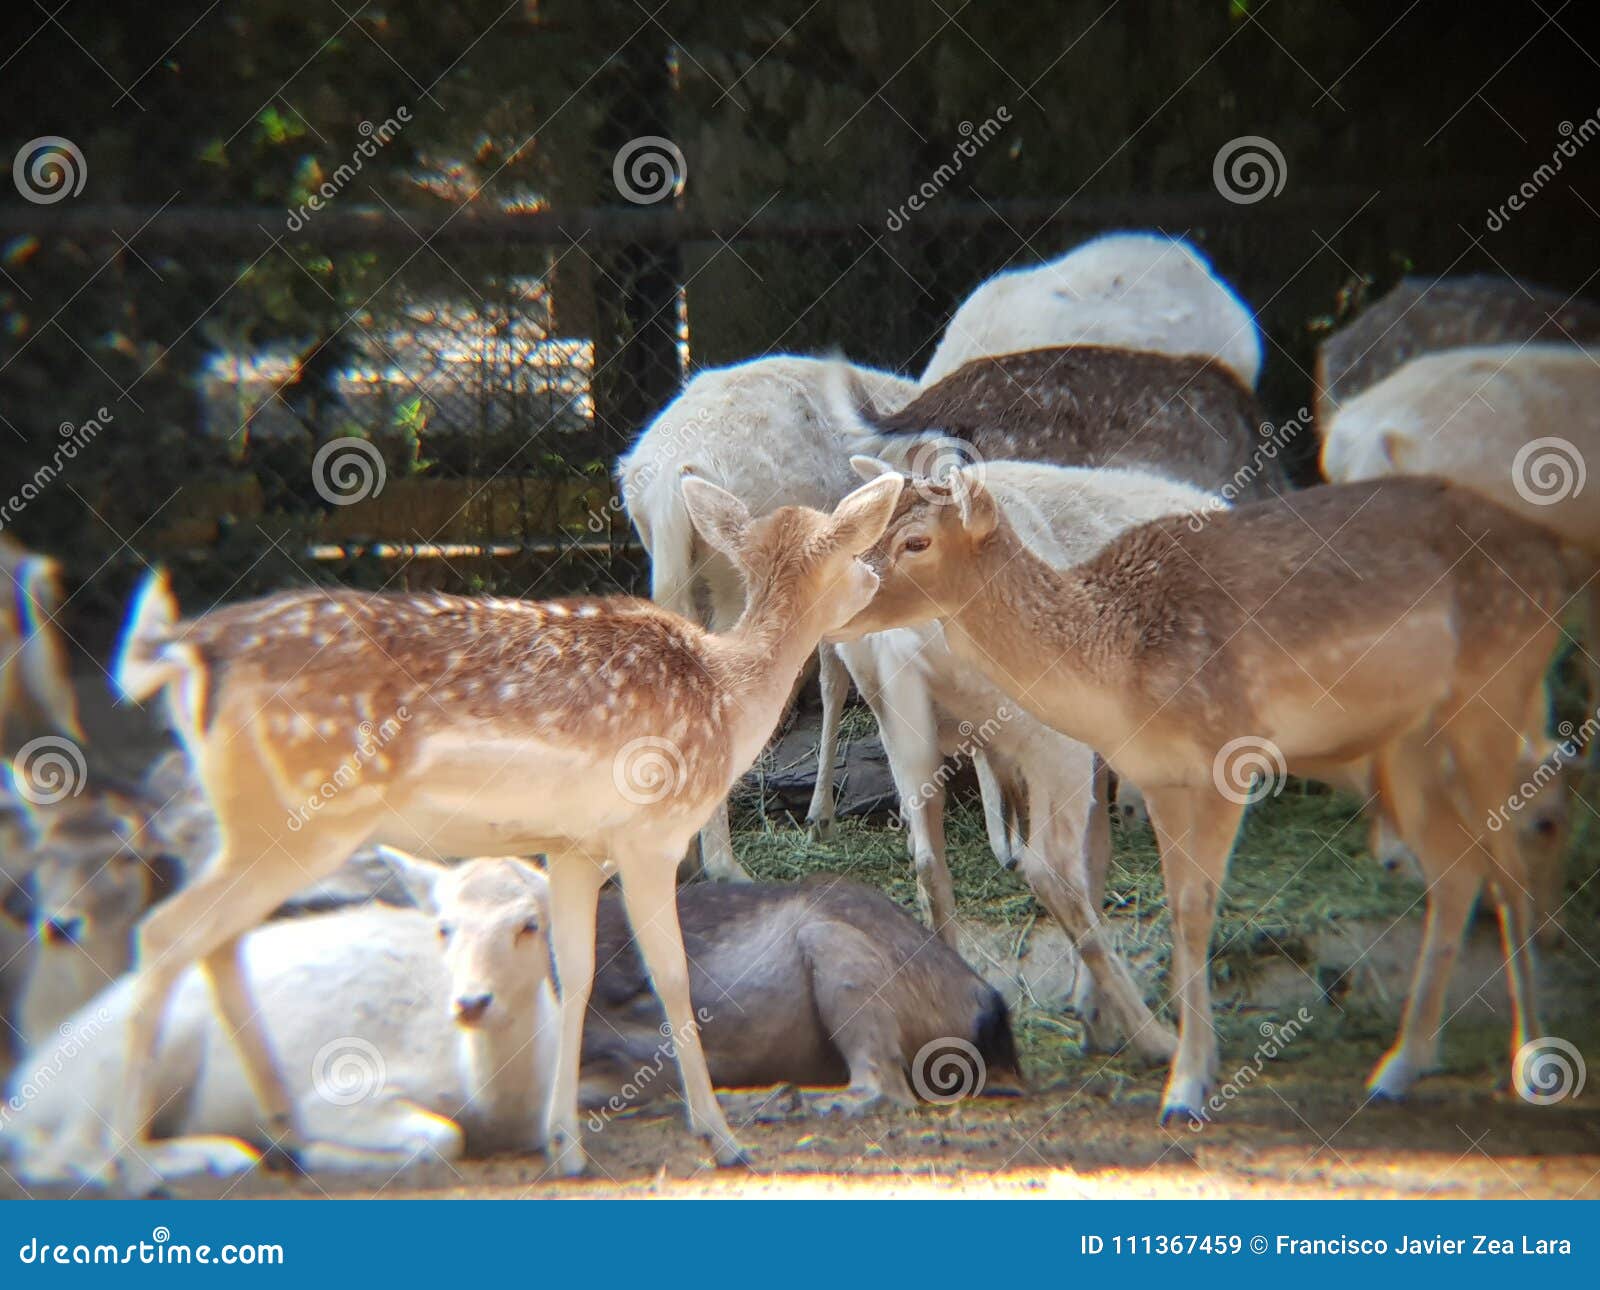 gamo deer in a zoo